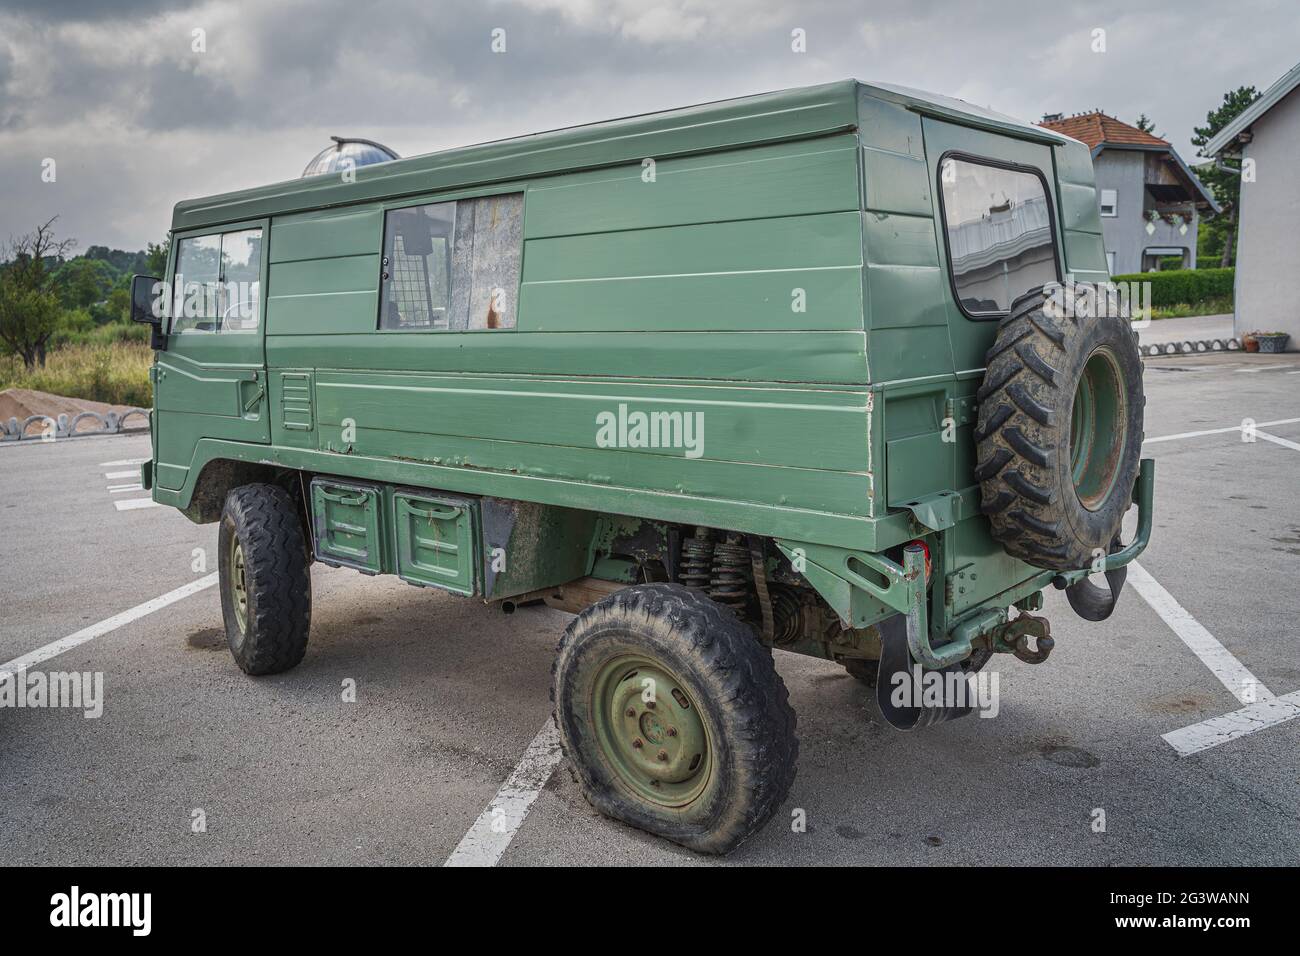 Junio de 2019 Impar vehículo, más probablemente personalizado militar Volvo 4x4 van desde 70s Foto de stock